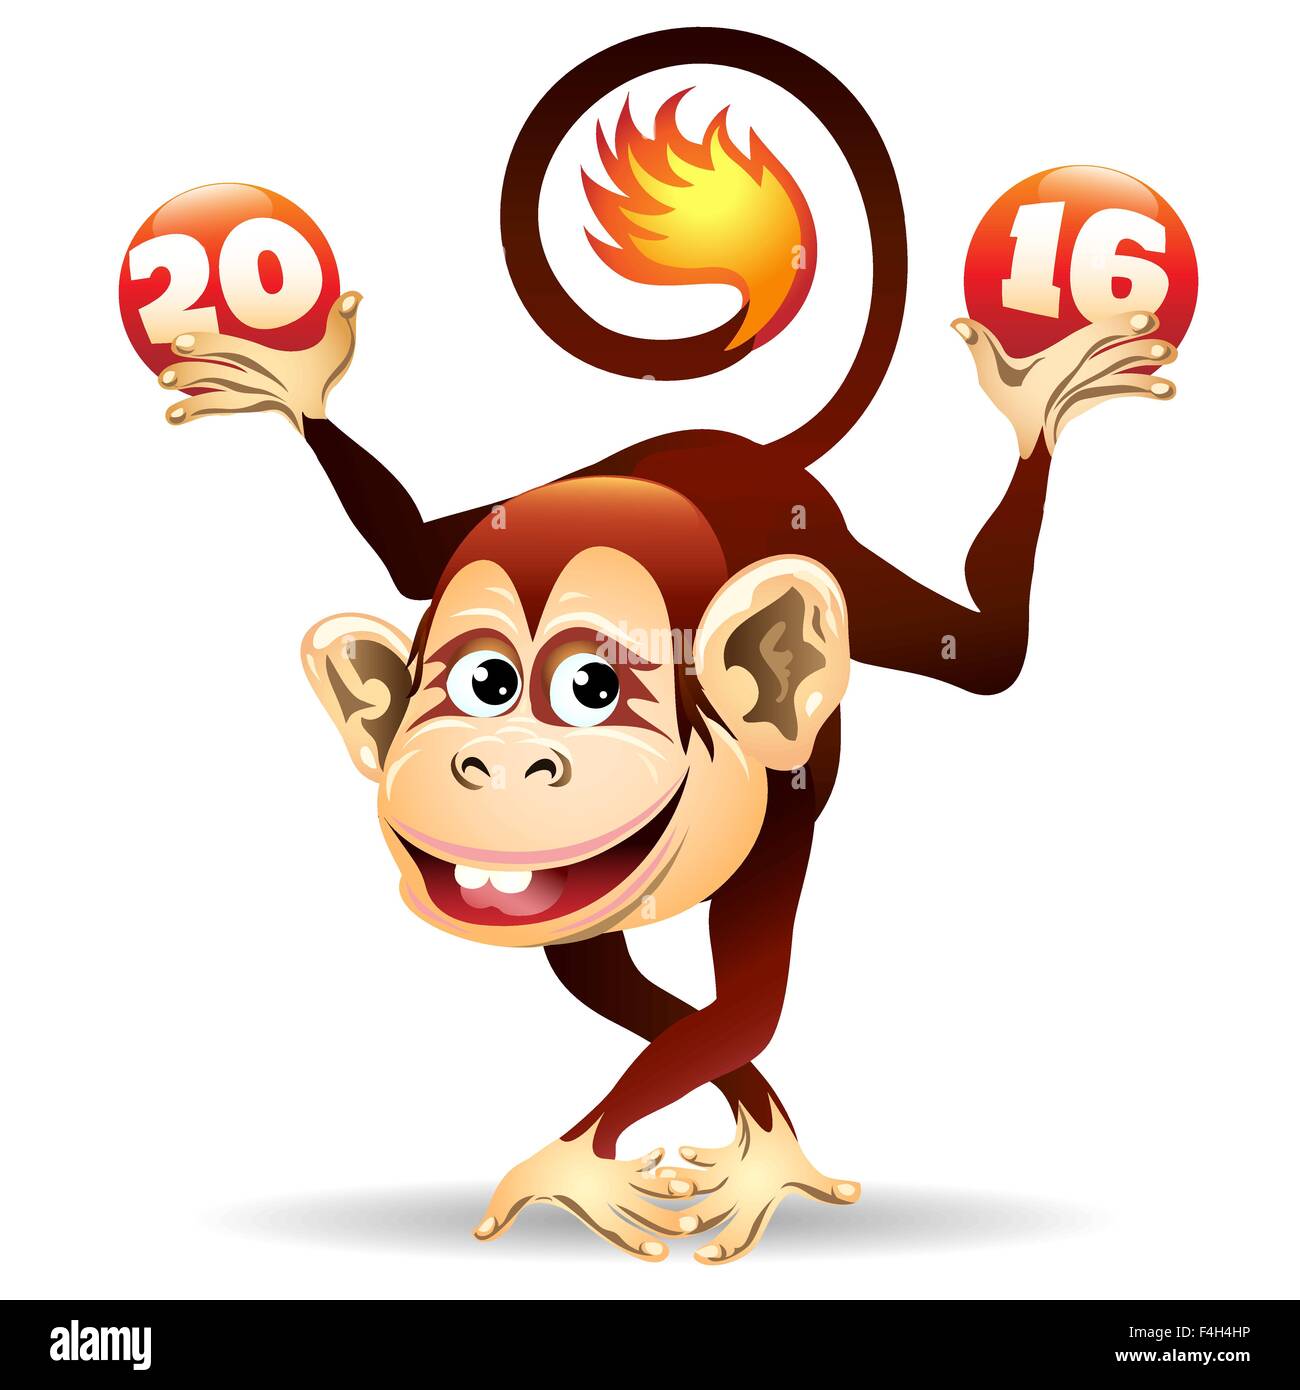 Symbole de l'année 2016 Fire Monkey.Cartoon illustration. Isolé sur blanc. Illustration de Vecteur